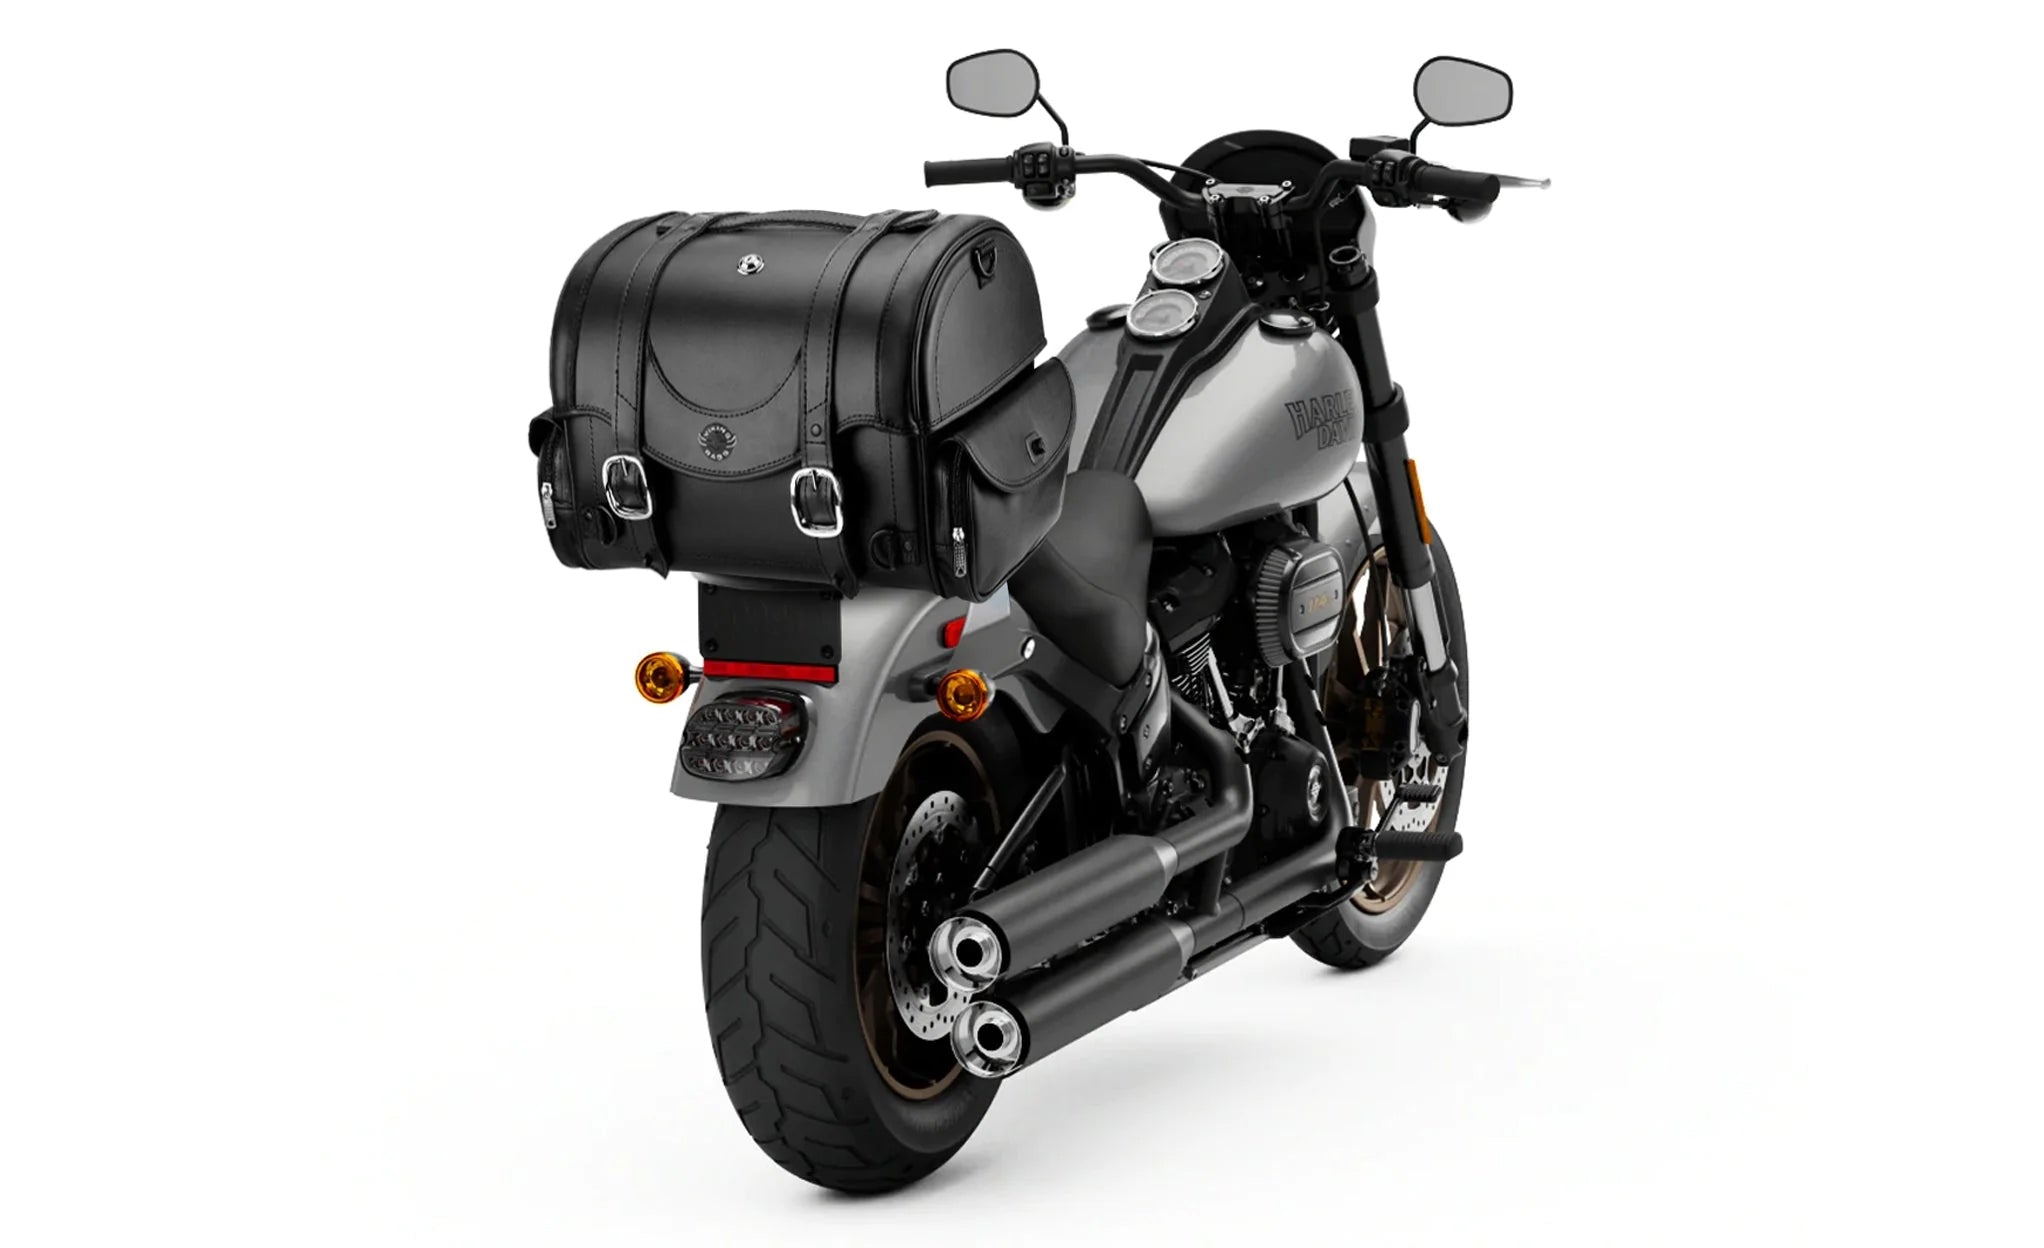 21L - Century Medium Yamaha Leather Motorcycle Roll Bag on Bike Photo @expand